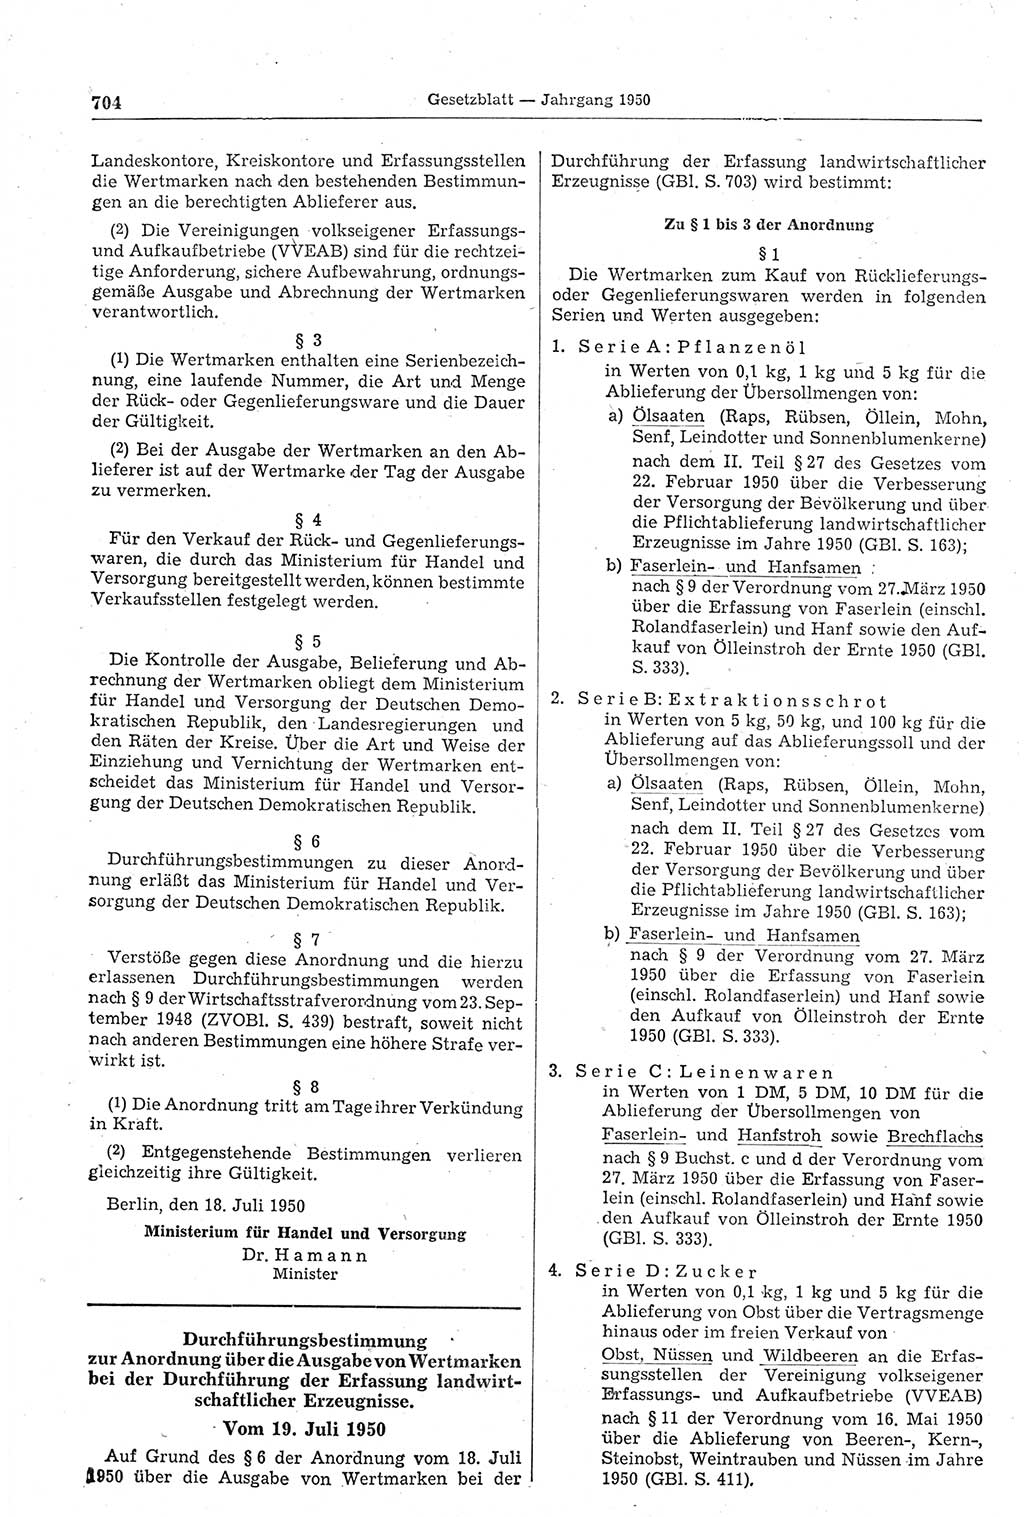 Gesetzblatt (GBl.) der Deutschen Demokratischen Republik (DDR) 1950, Seite 704 (GBl. DDR 1950, S. 704)